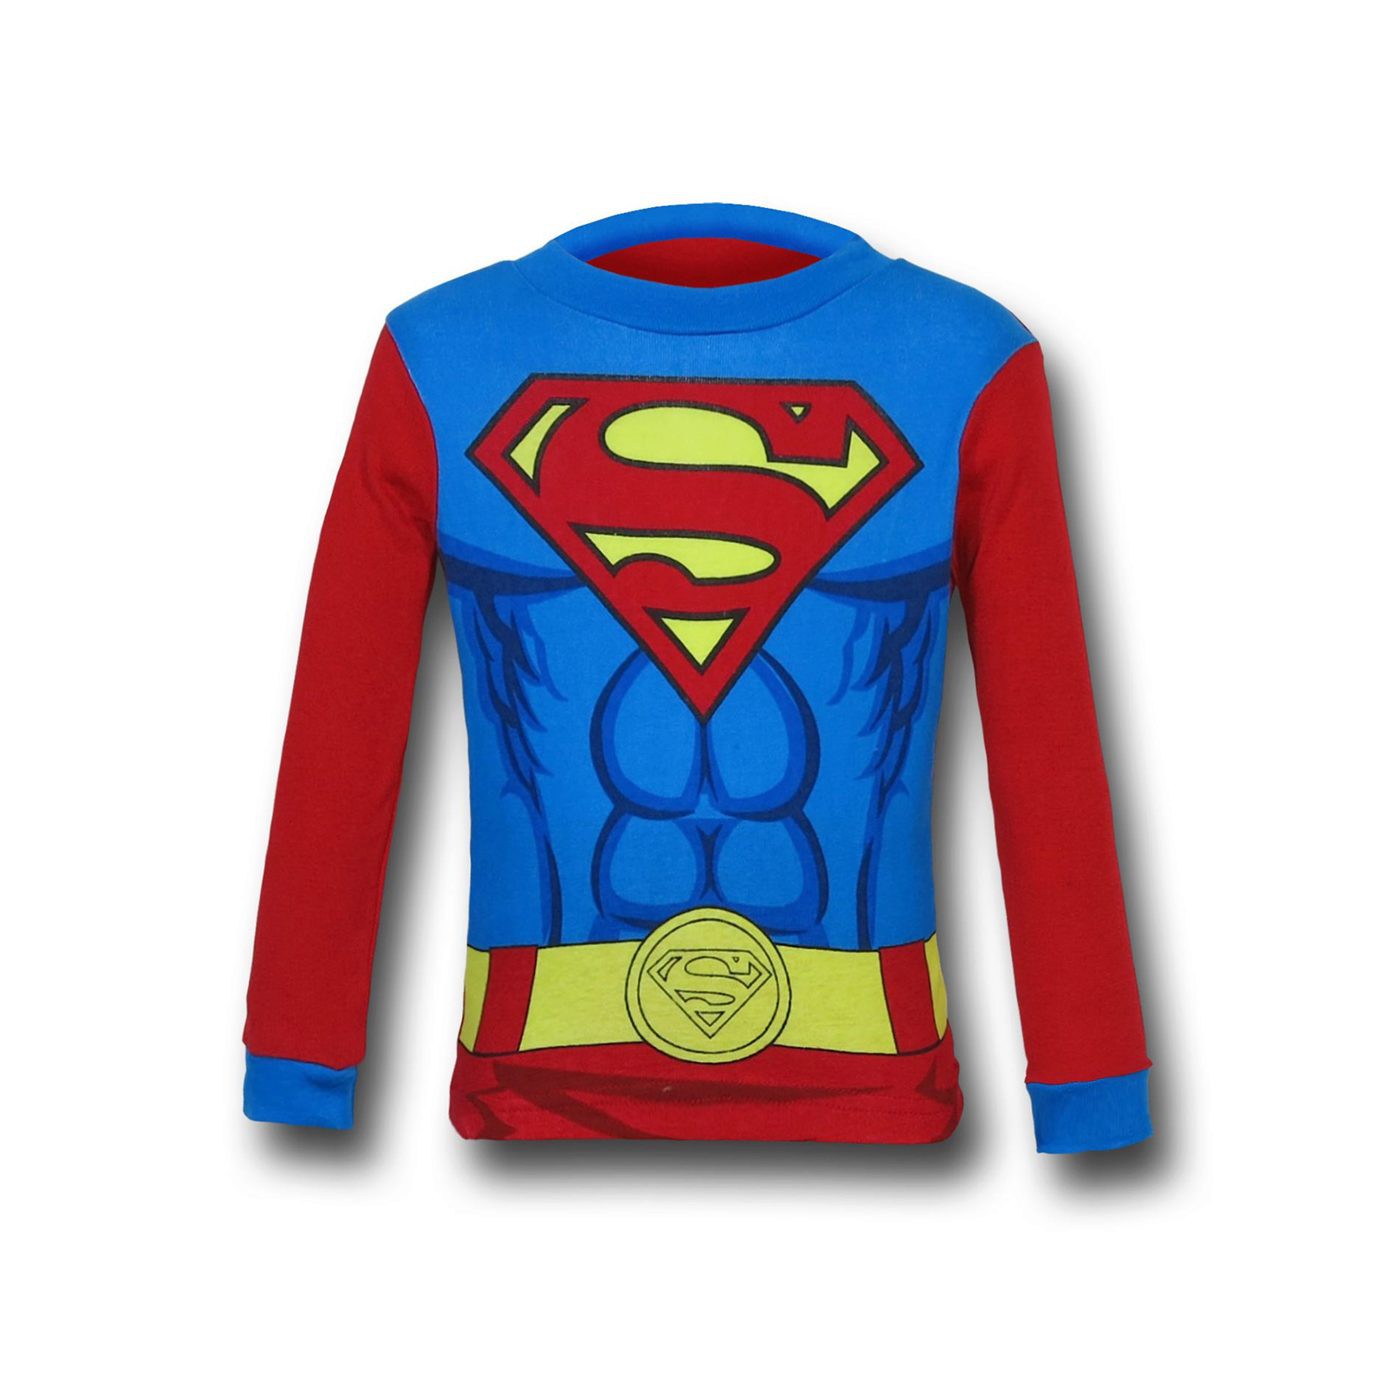 Superman & Batman Costume Kids Pajama Set